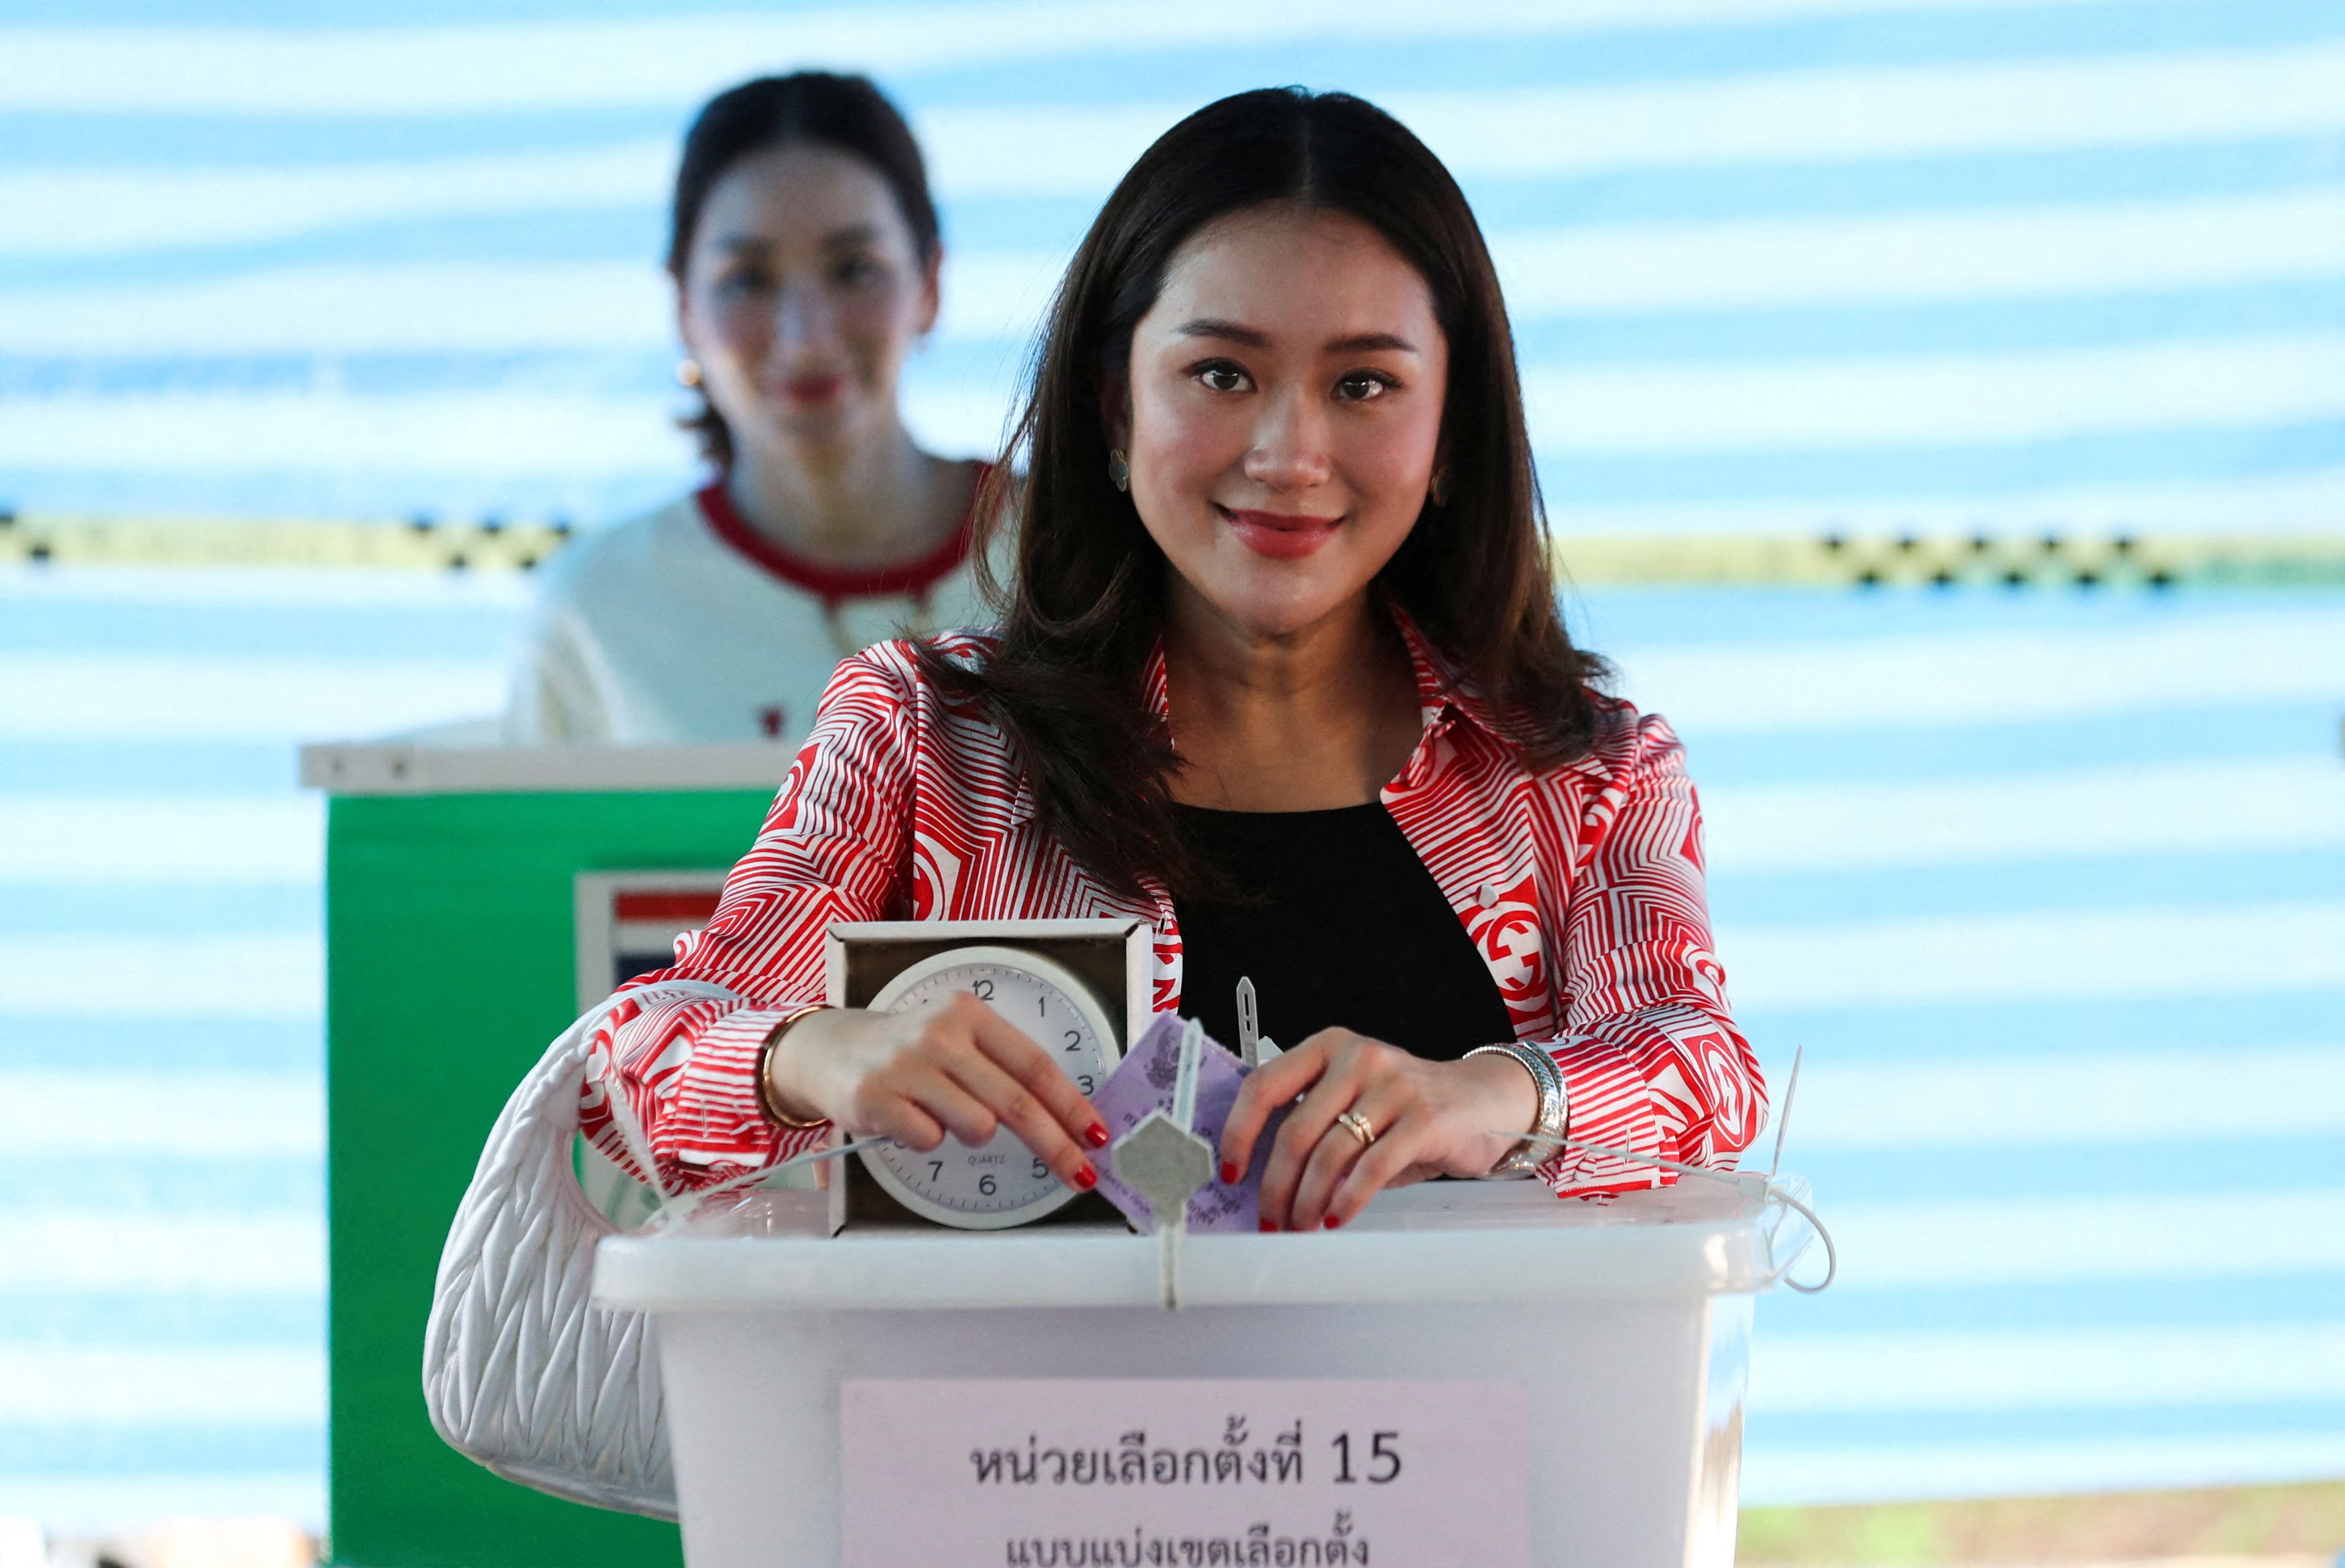 Εκλογές στην Ταϊλάνδη: Αναμένεται ρεκόρ συμμετοχής - Να απομακρύνει από την εξουσία τους φιλοστρατιωτικούς θέλει η αντιπολίτευση